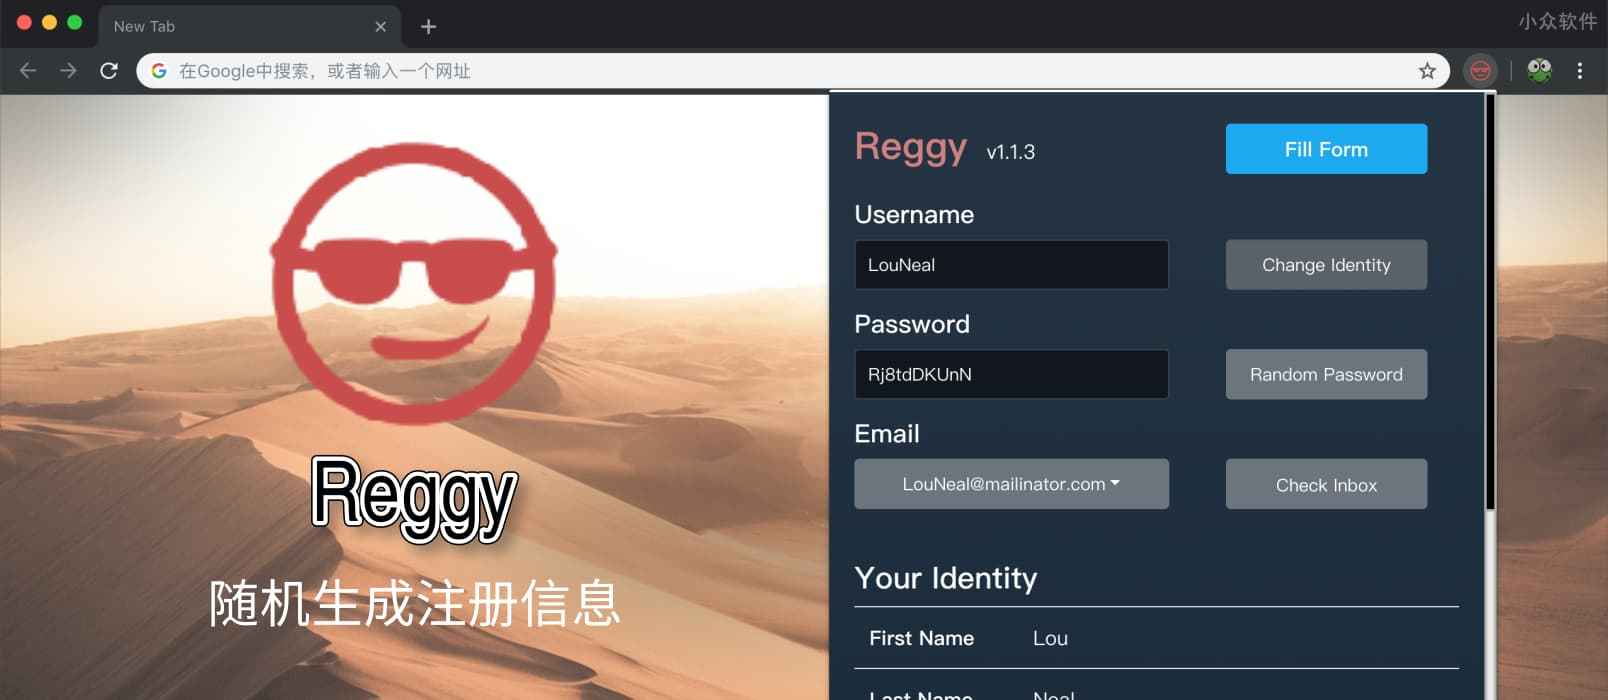 Reggy - 随机生成用户密码邮箱地址，一键填表，保护隐私[Chrome] 1